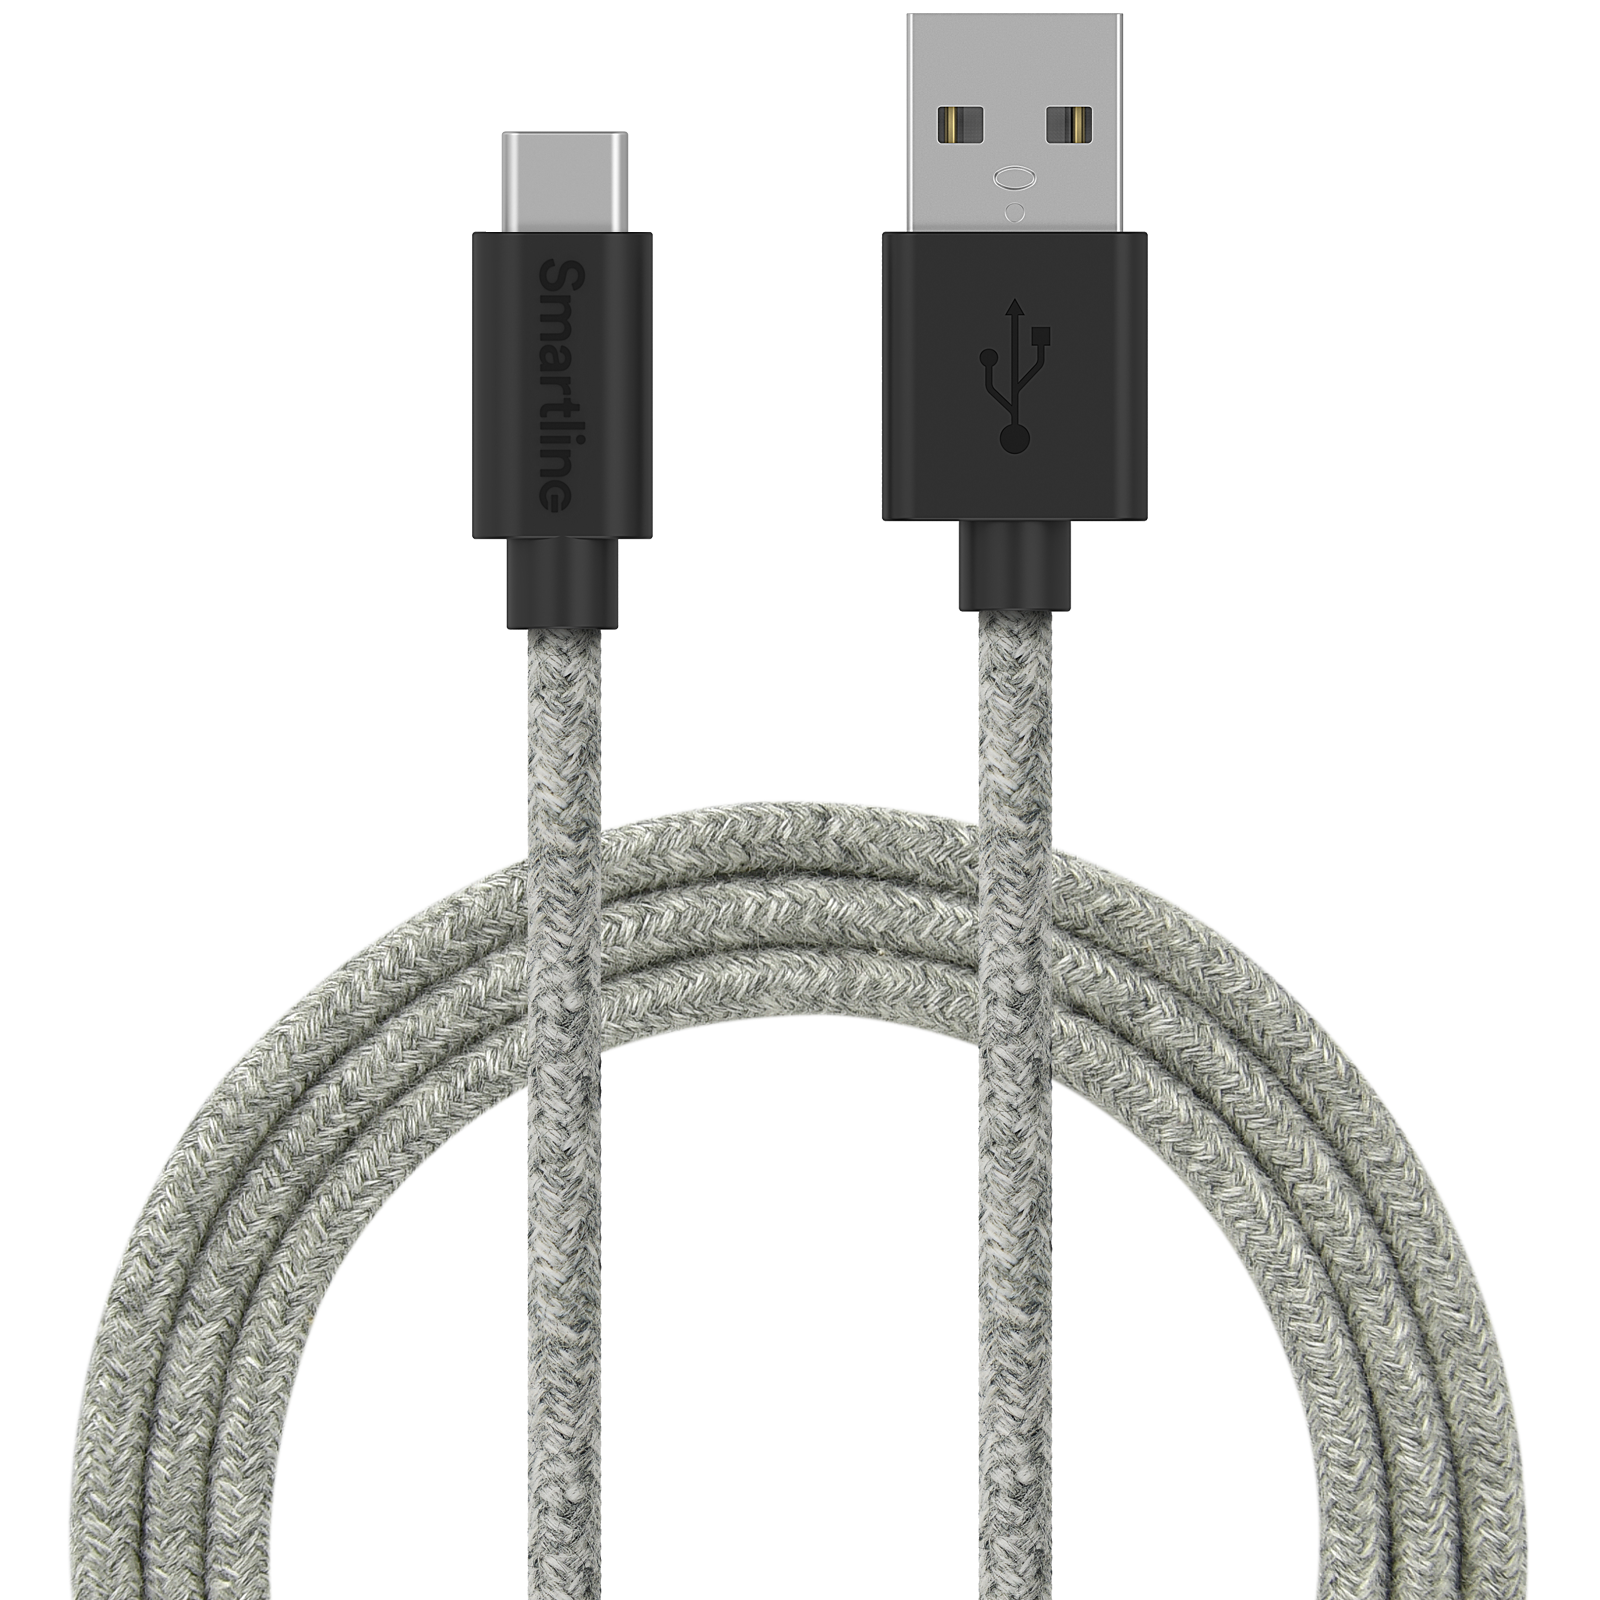 Fuzzy USB-kabel USB-C 2m Grå